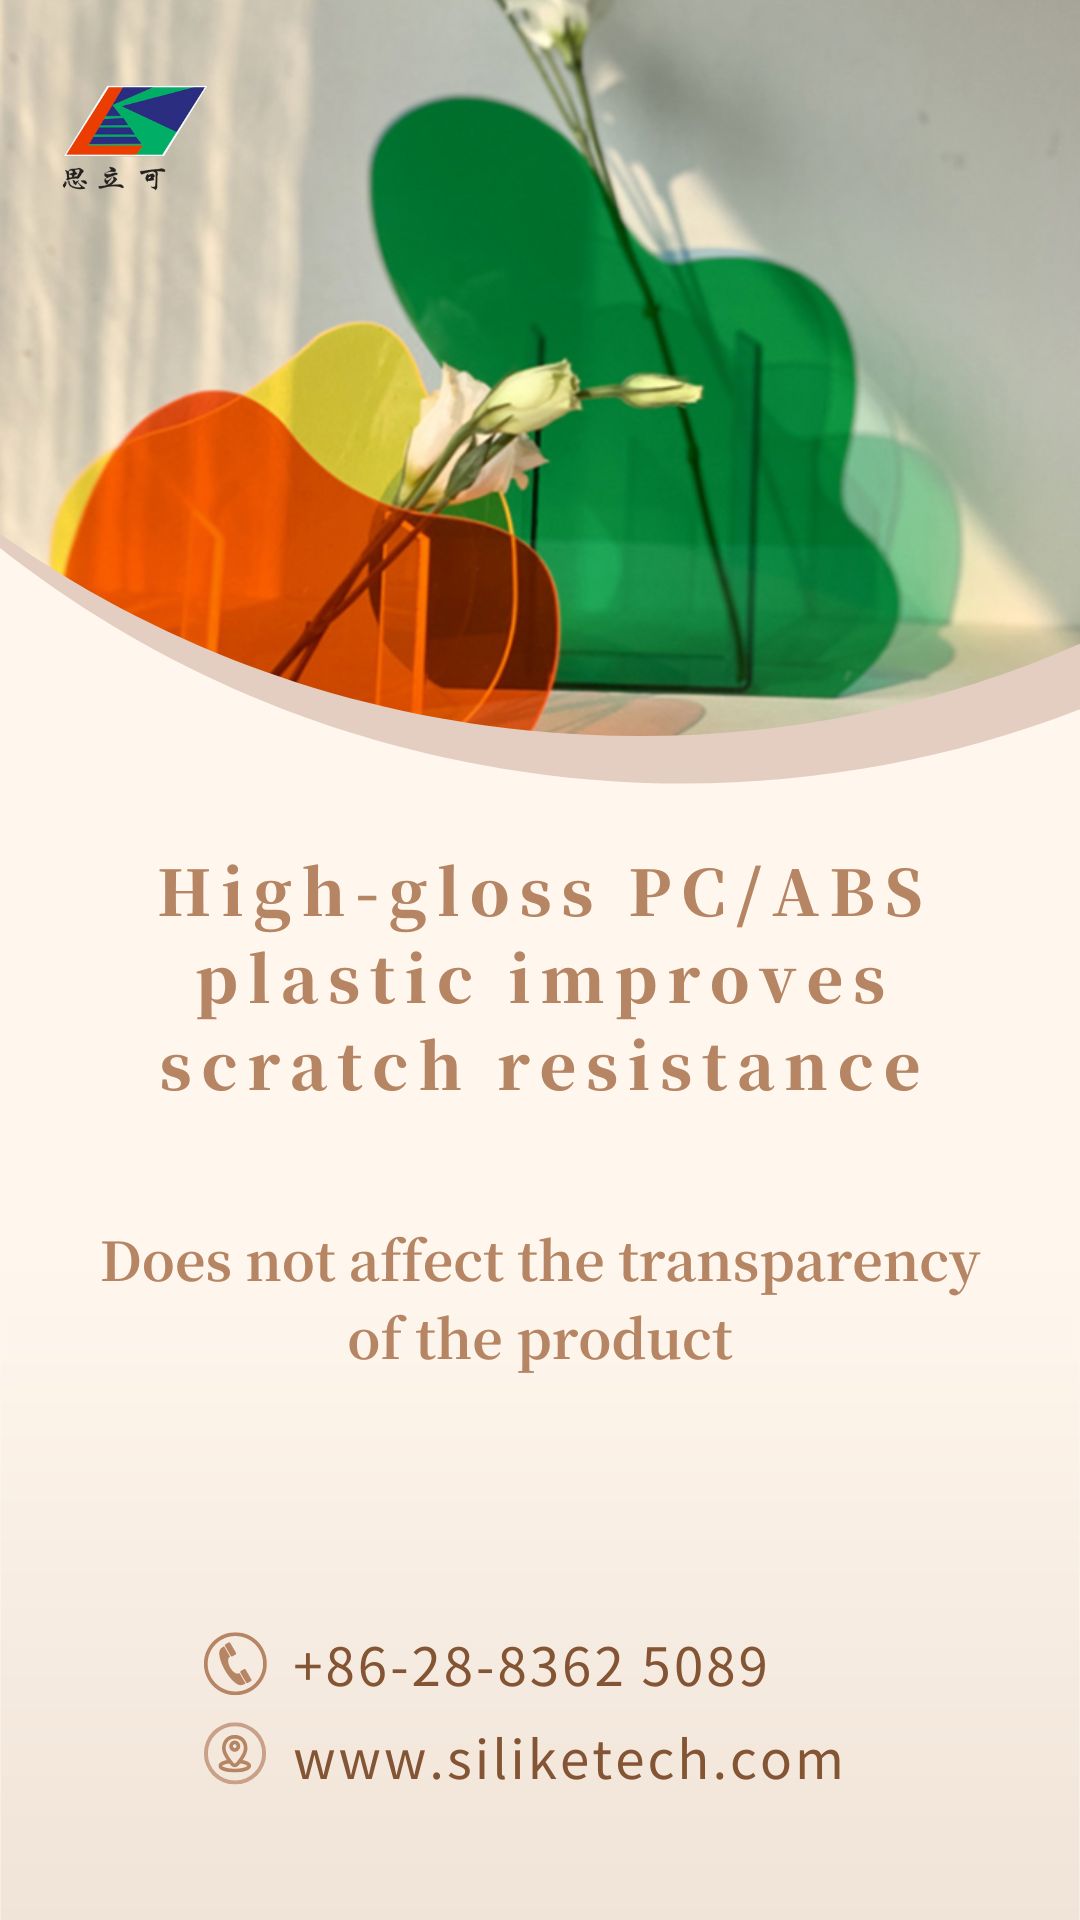 פתרון פלסטיק PC/ABS מבריק לשיפור עמידות בפני שריטות